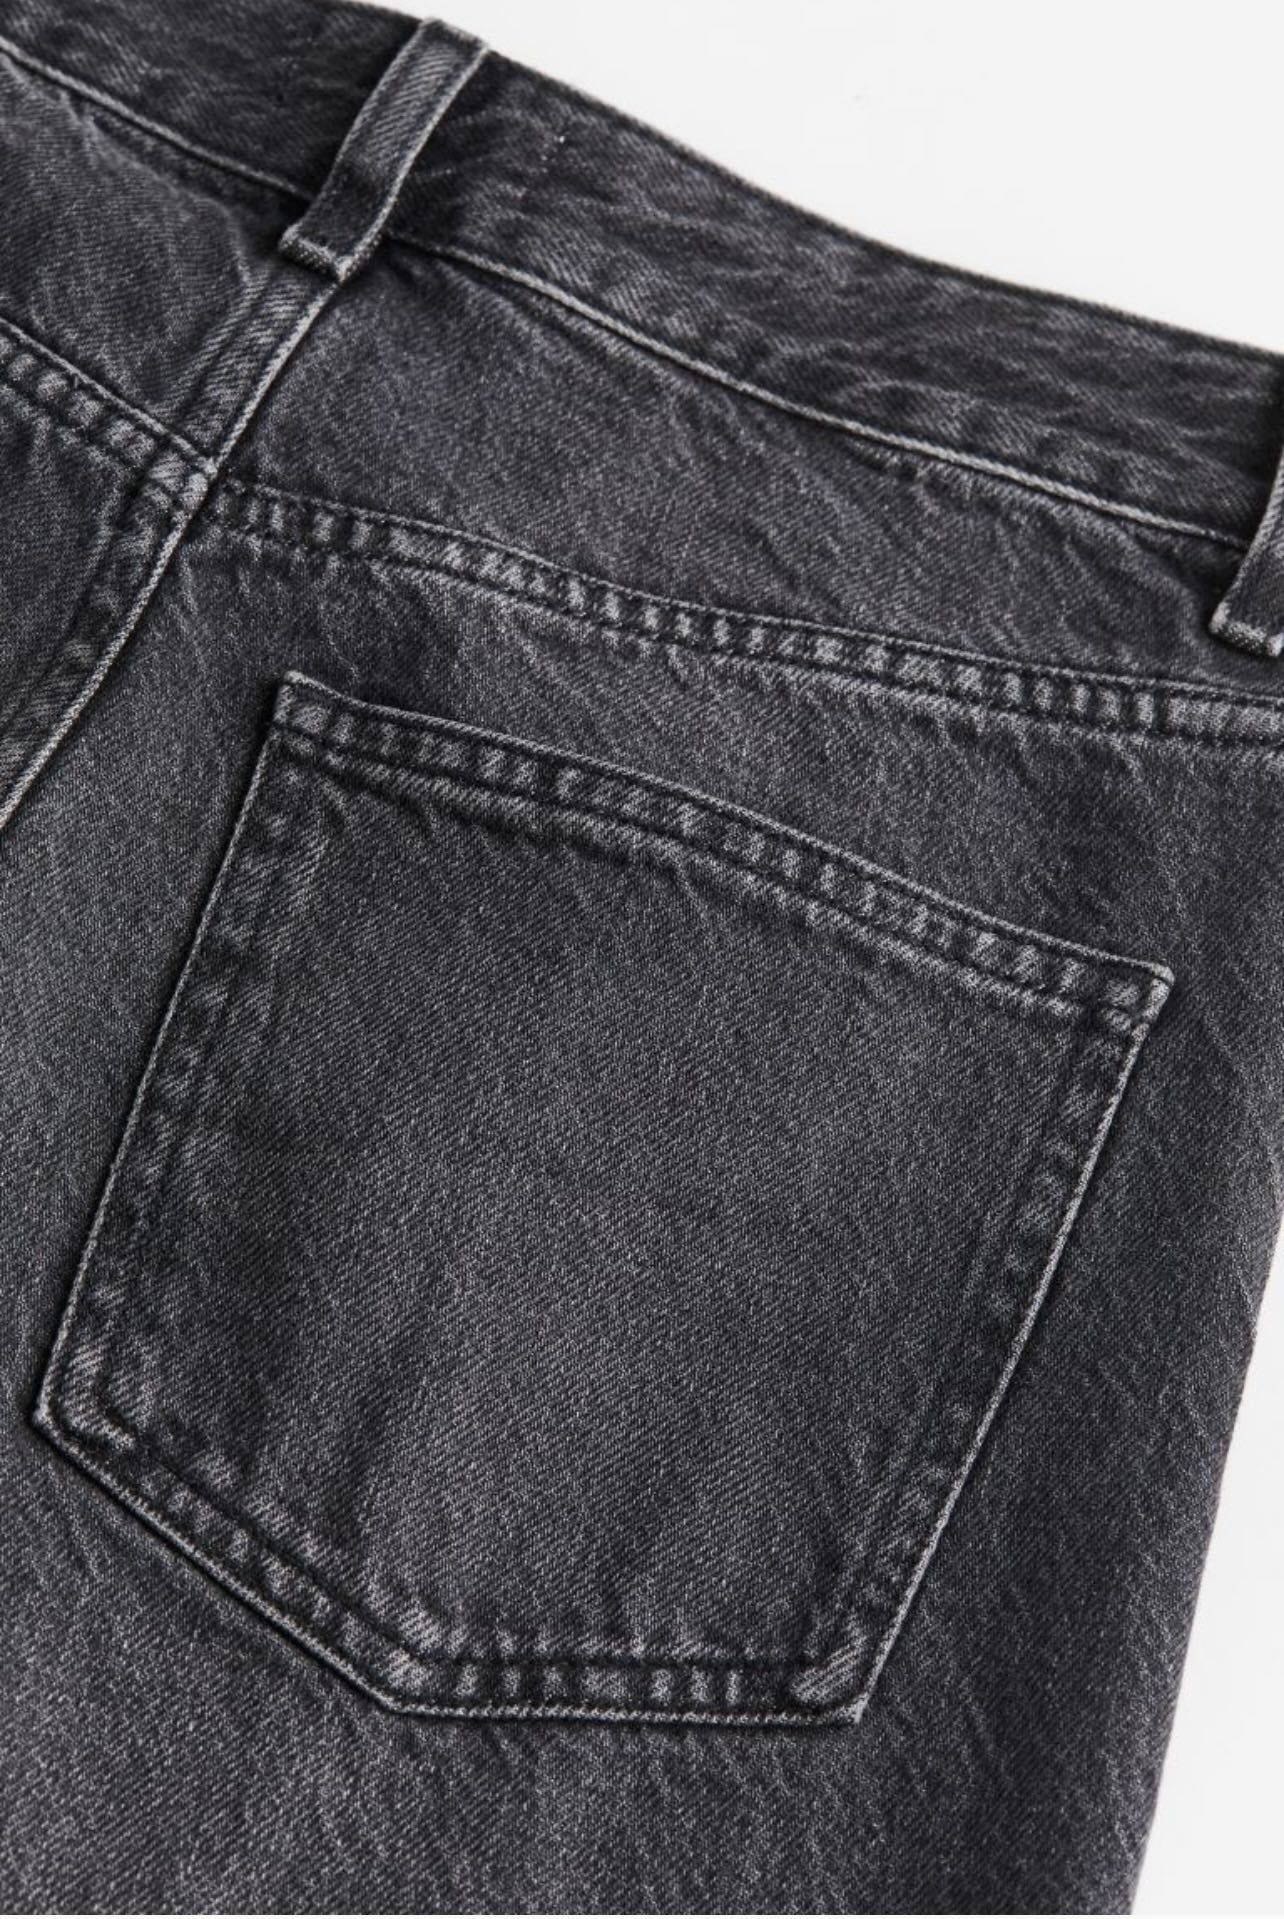 H&M Женские широкие джинсы. Новые. Размер 46. L